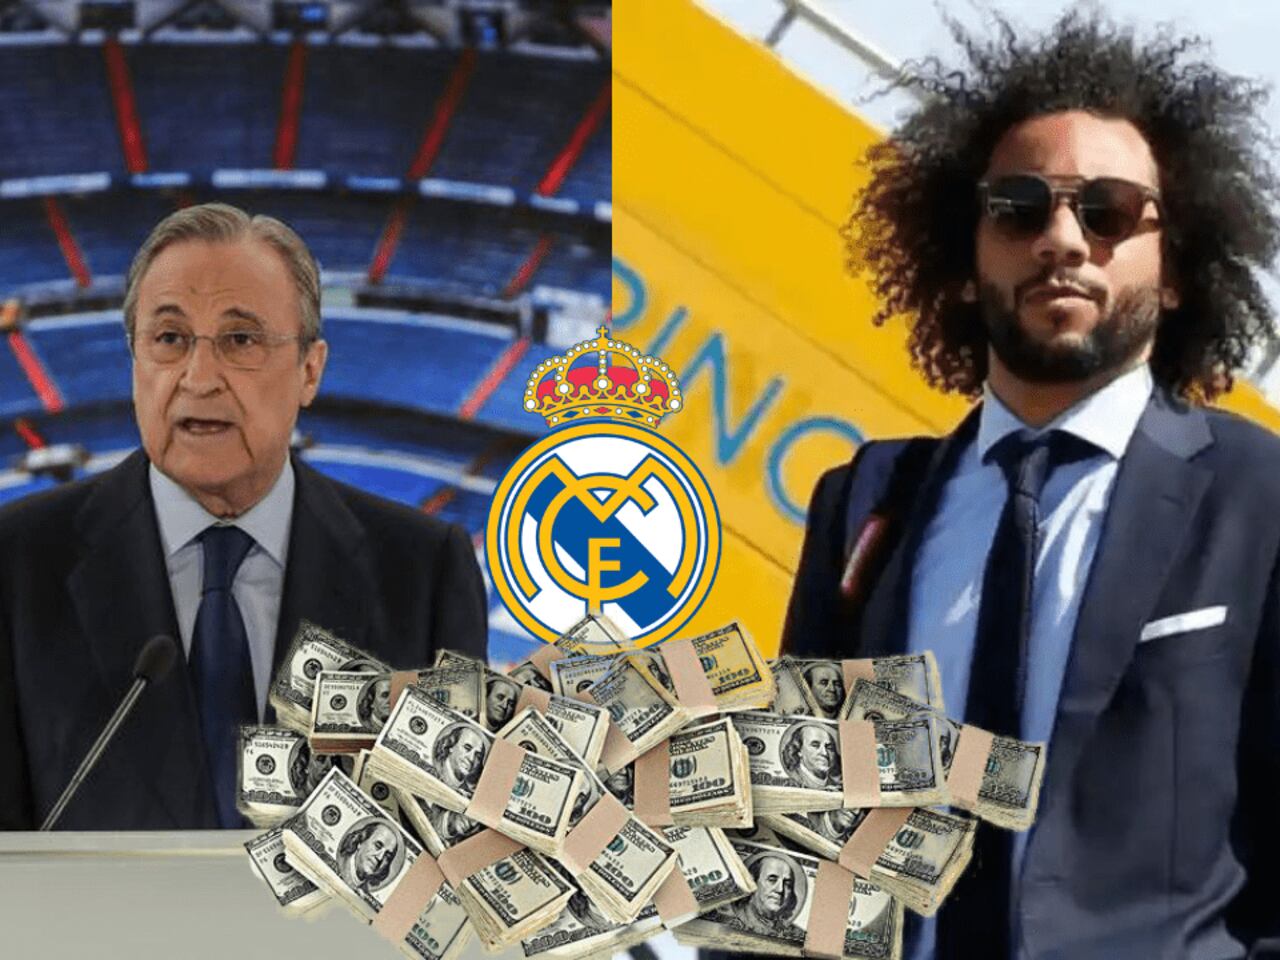 La traición, se confirma que Marcelo le haría perder 150 millones al Real Madrid